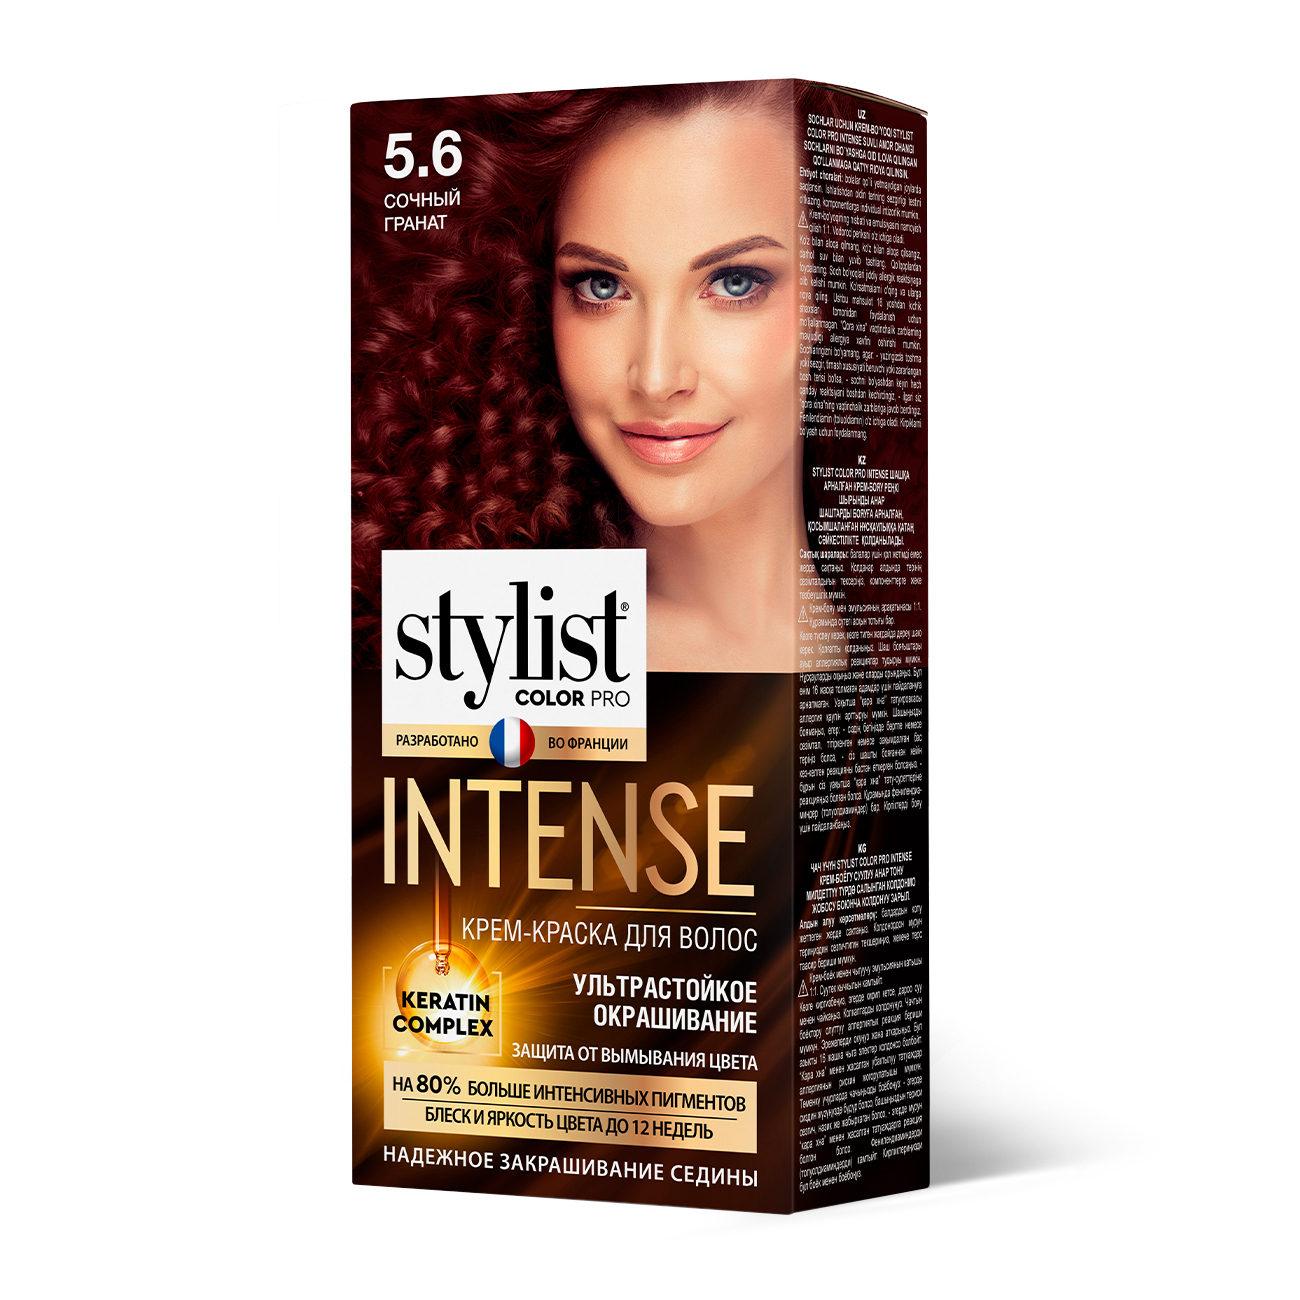 Крем-краска для волос Stylist color pro Intense №5.6 Сочный гранат, 118 мл